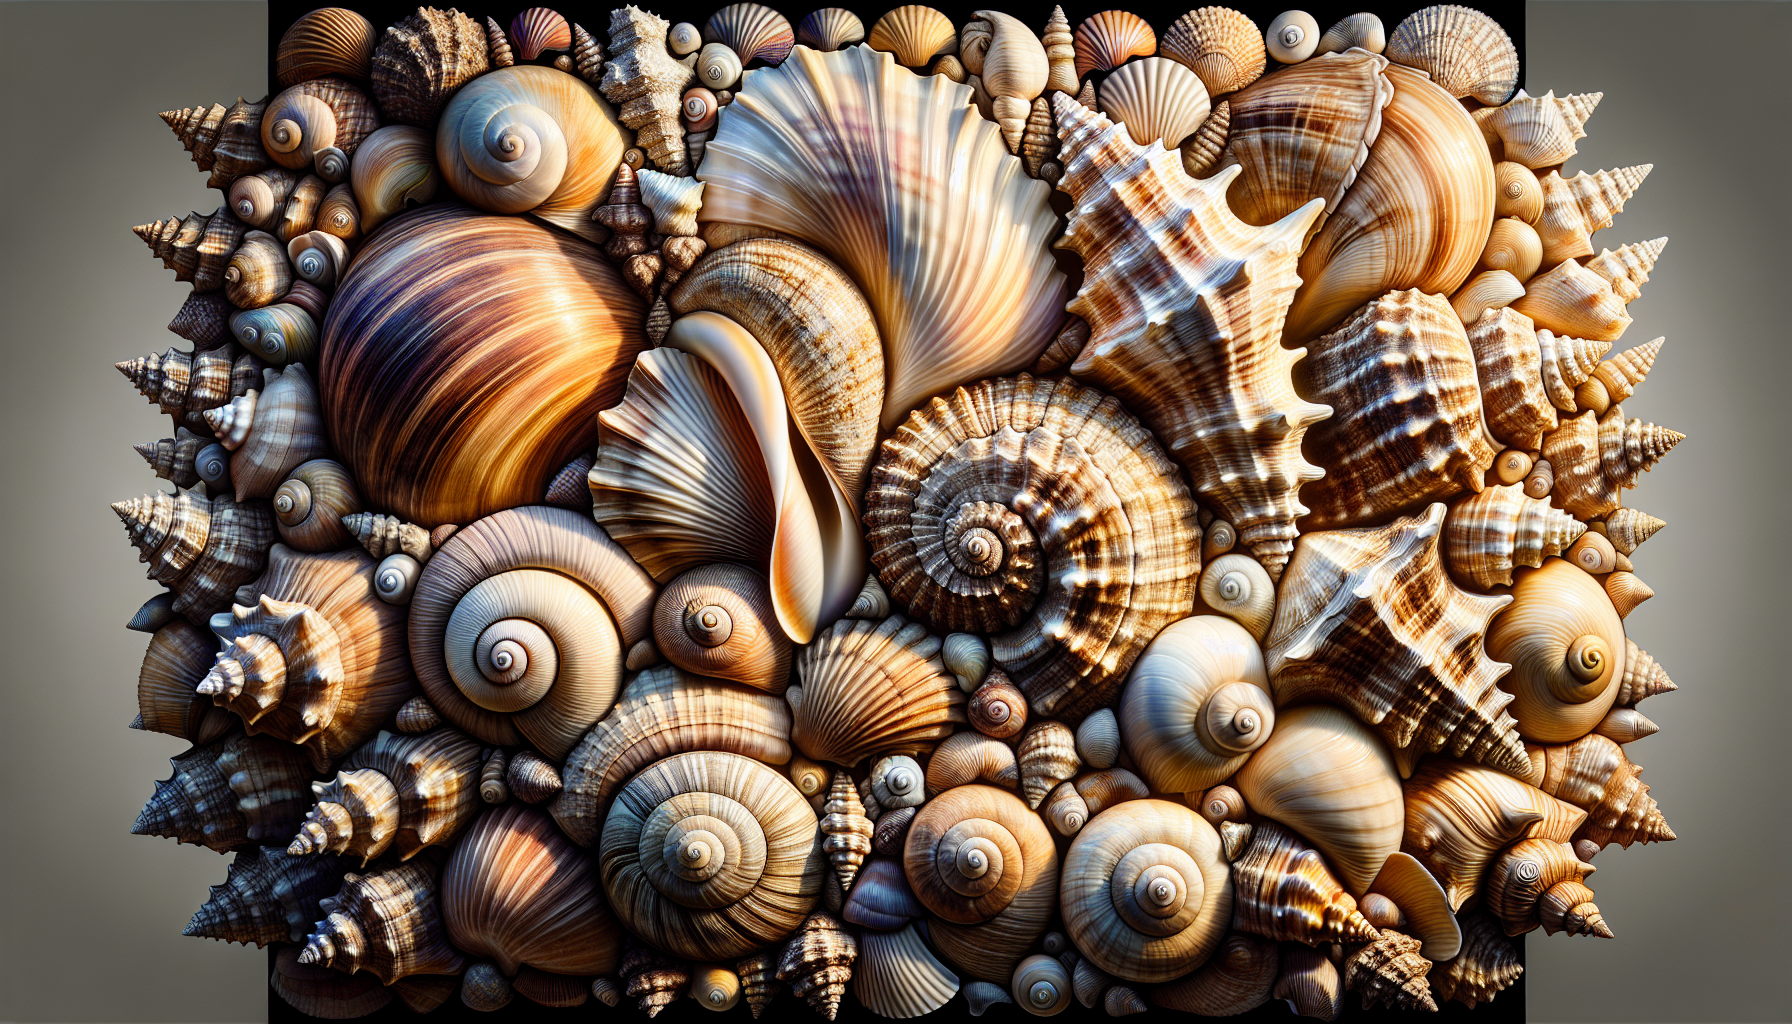 Large Seashells Wholesale | Artistic representation of popular large seashell varieties